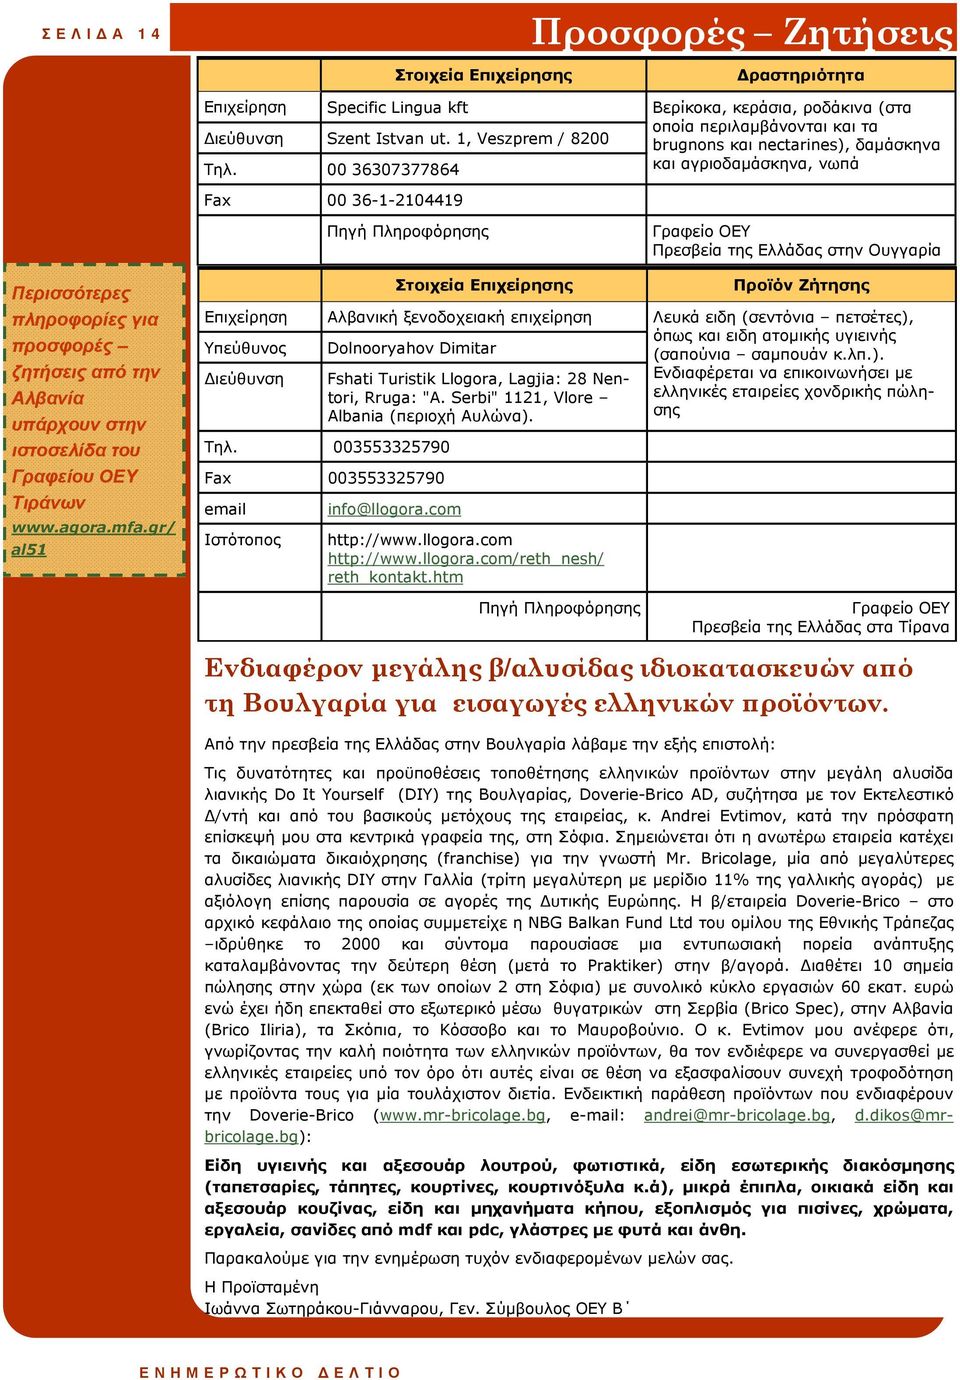 00 36307377864 και αγριοδαµάσκηνα, νωπά Fax 00 36-1-2104419 Πρεσβεία της Ελλάδας στην Ουγγαρία Περισσότερες πληροφορίες για προσφορές ζητήσεις από την Αλβανία υπάρχουν στην ιστοσελίδα του Γραφείου